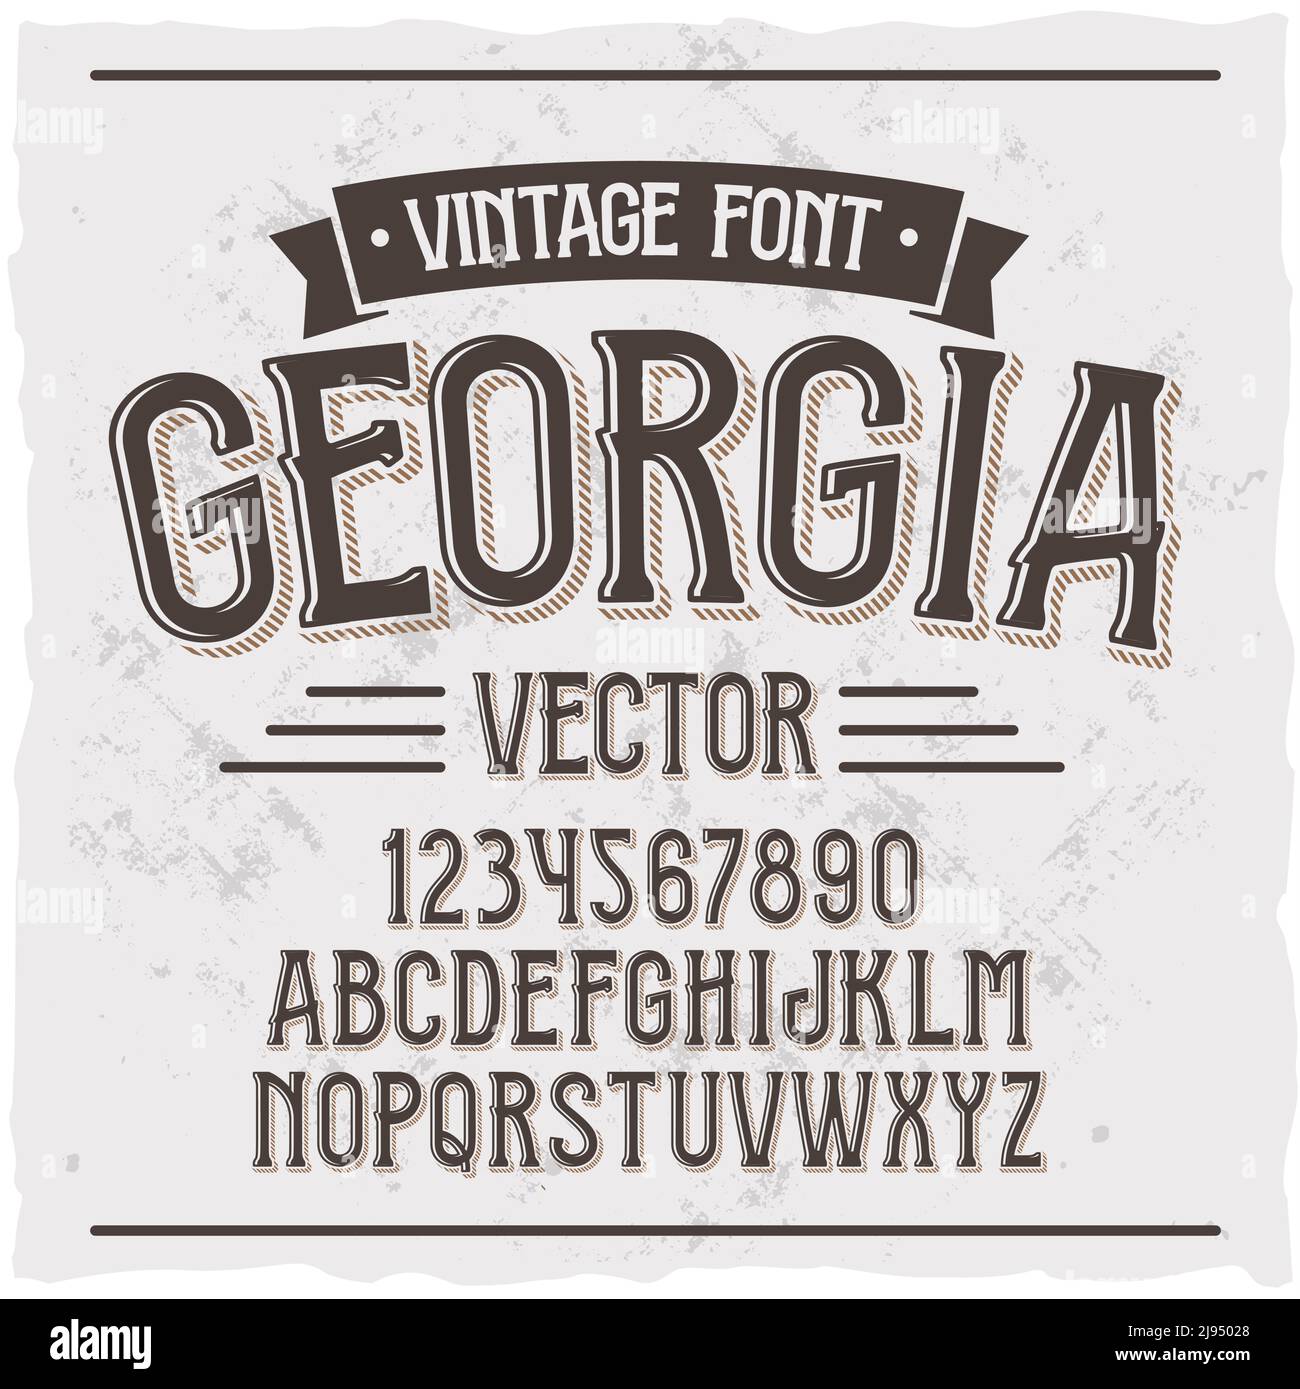 Original-Label-Schrift namens 'Georgia'. Gute handgefertigte Schrift für jedes Label-Design. Stock Vektor